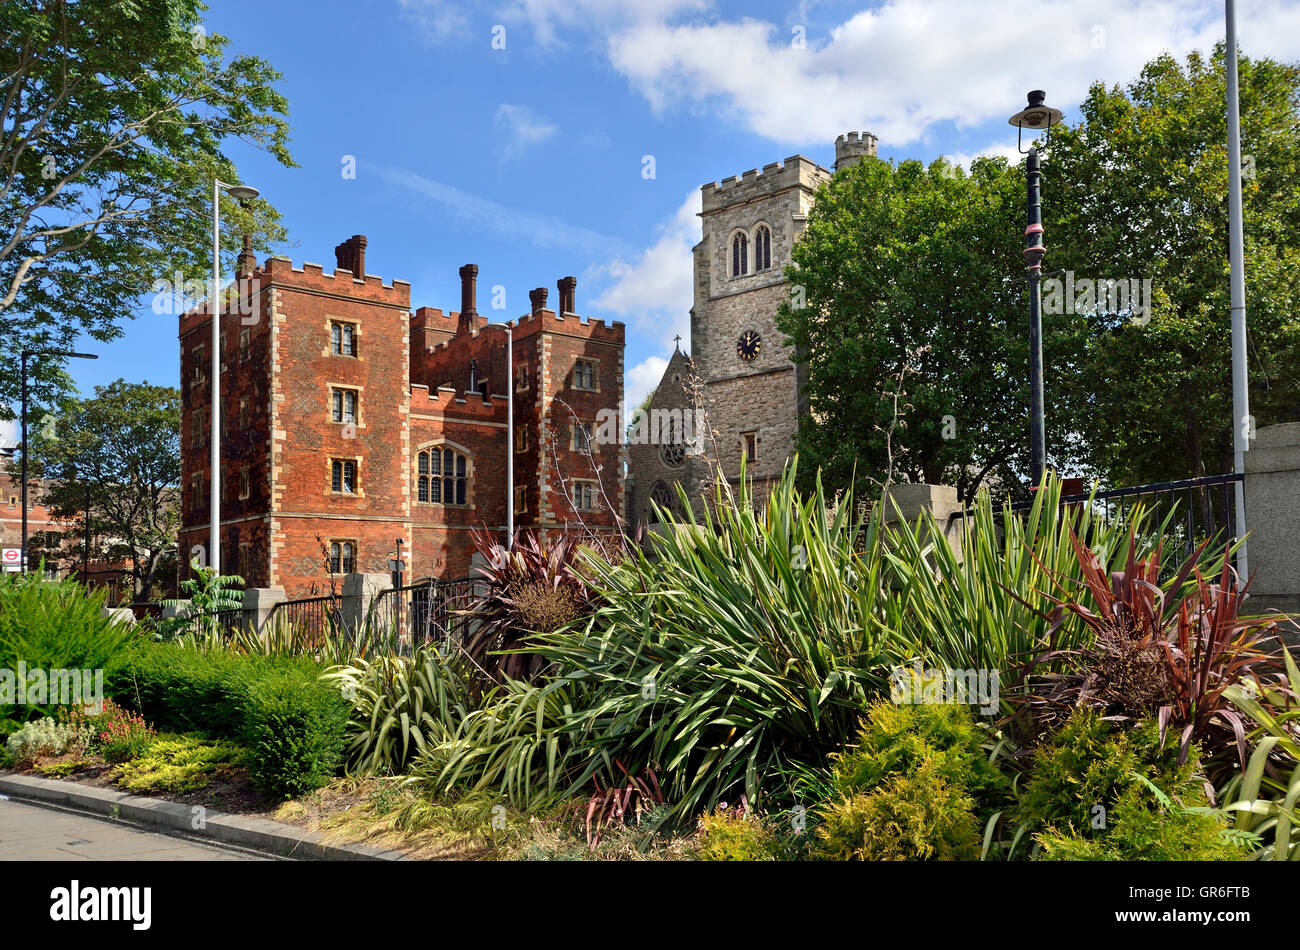 Londra, Inghilterra, Regno Unito. Lambeth Palace - residenza ufficiale dell'Arcivescovo di Canterbury Foto Stock